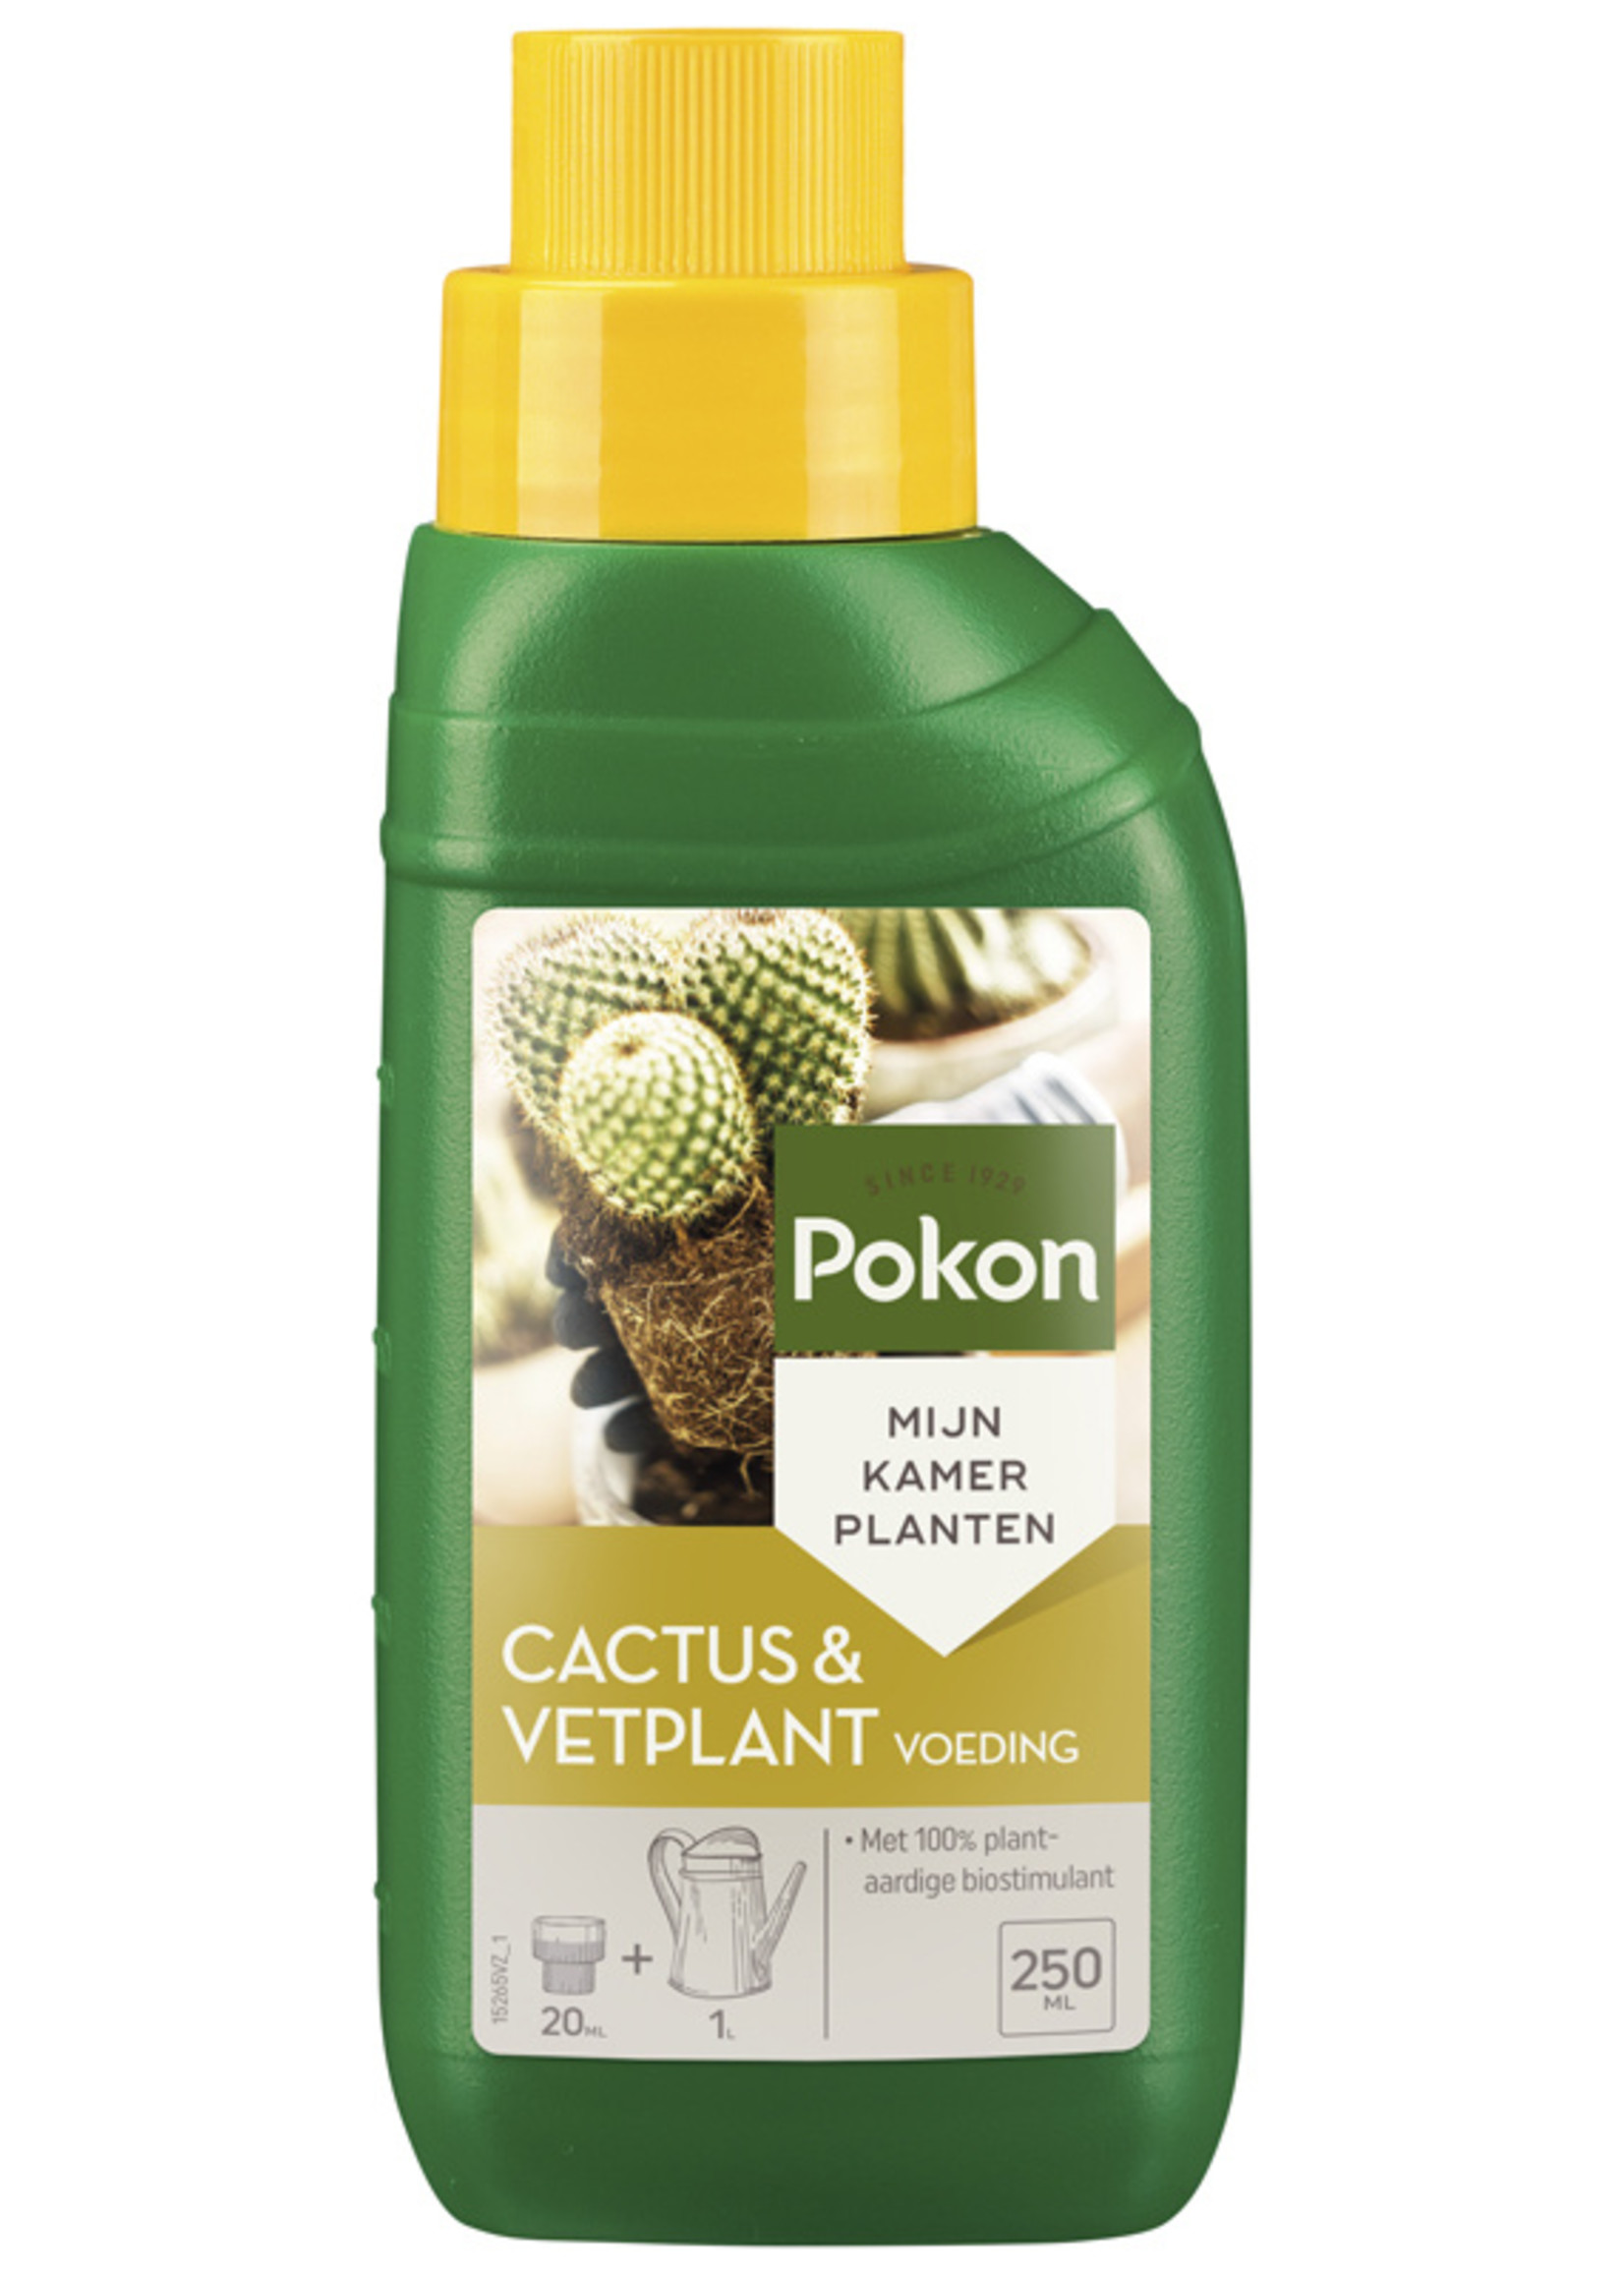 Pokon Cactus & vetplant 250ml